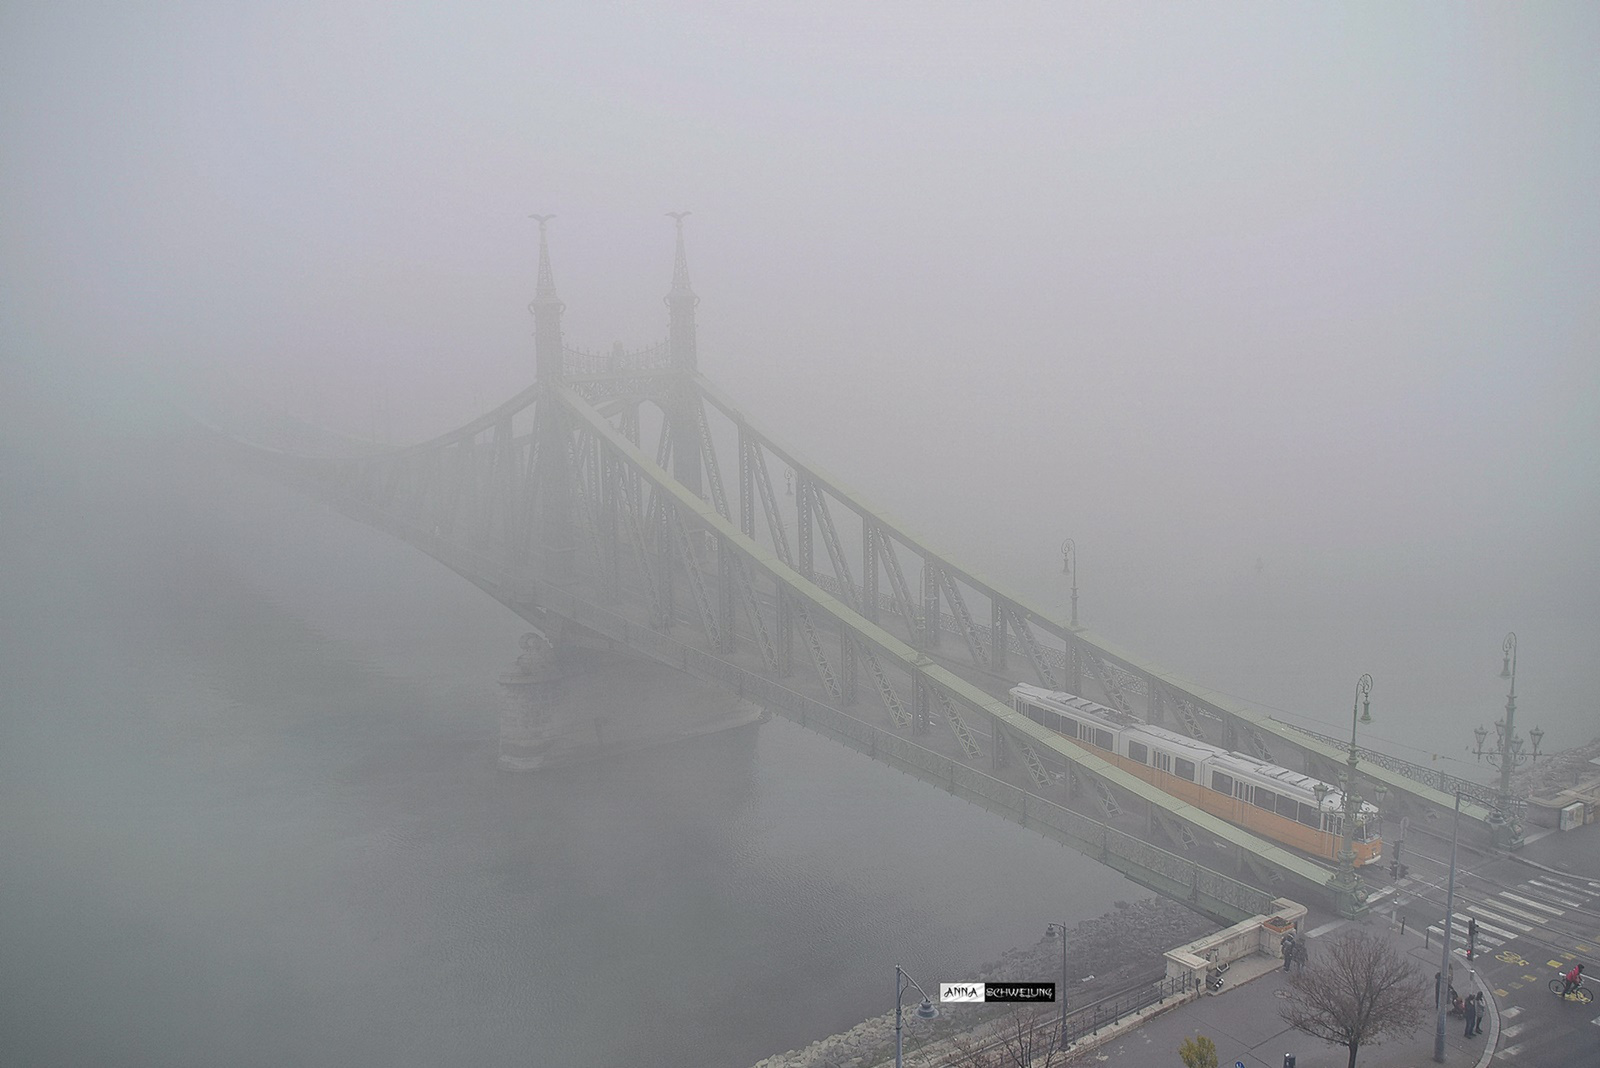 Enyhe színfolt a ködös hídon...